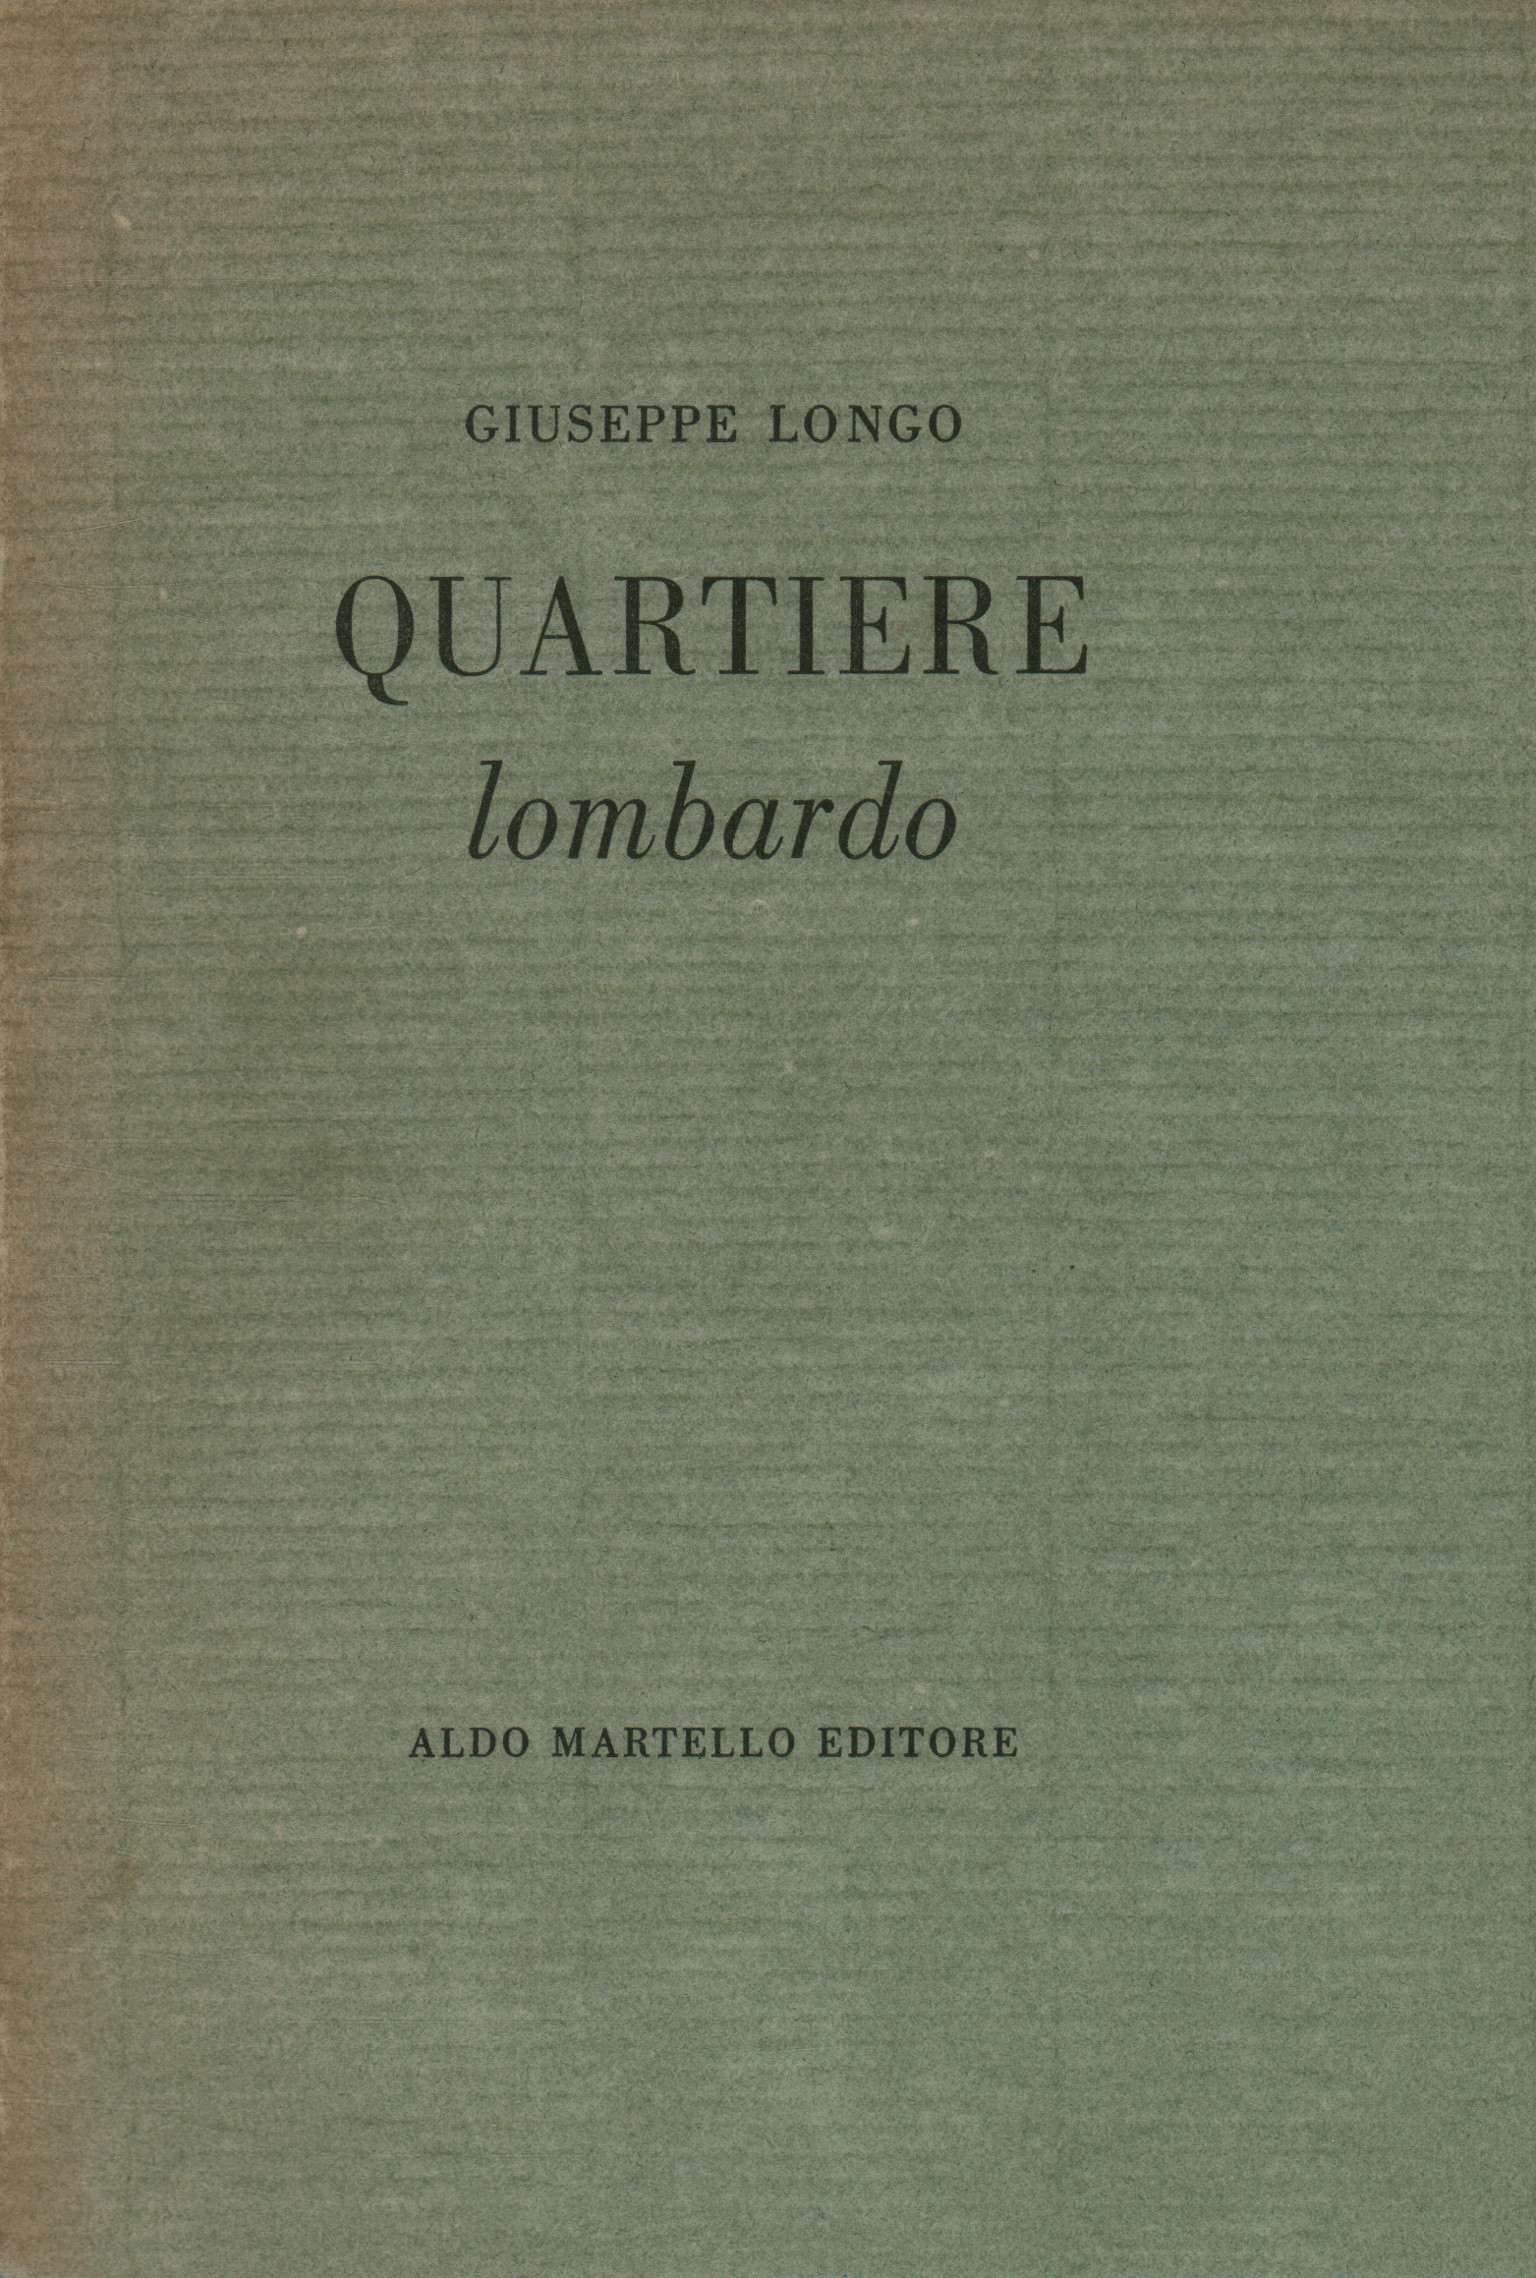 Barrio lombardo, Giuseppe Longo